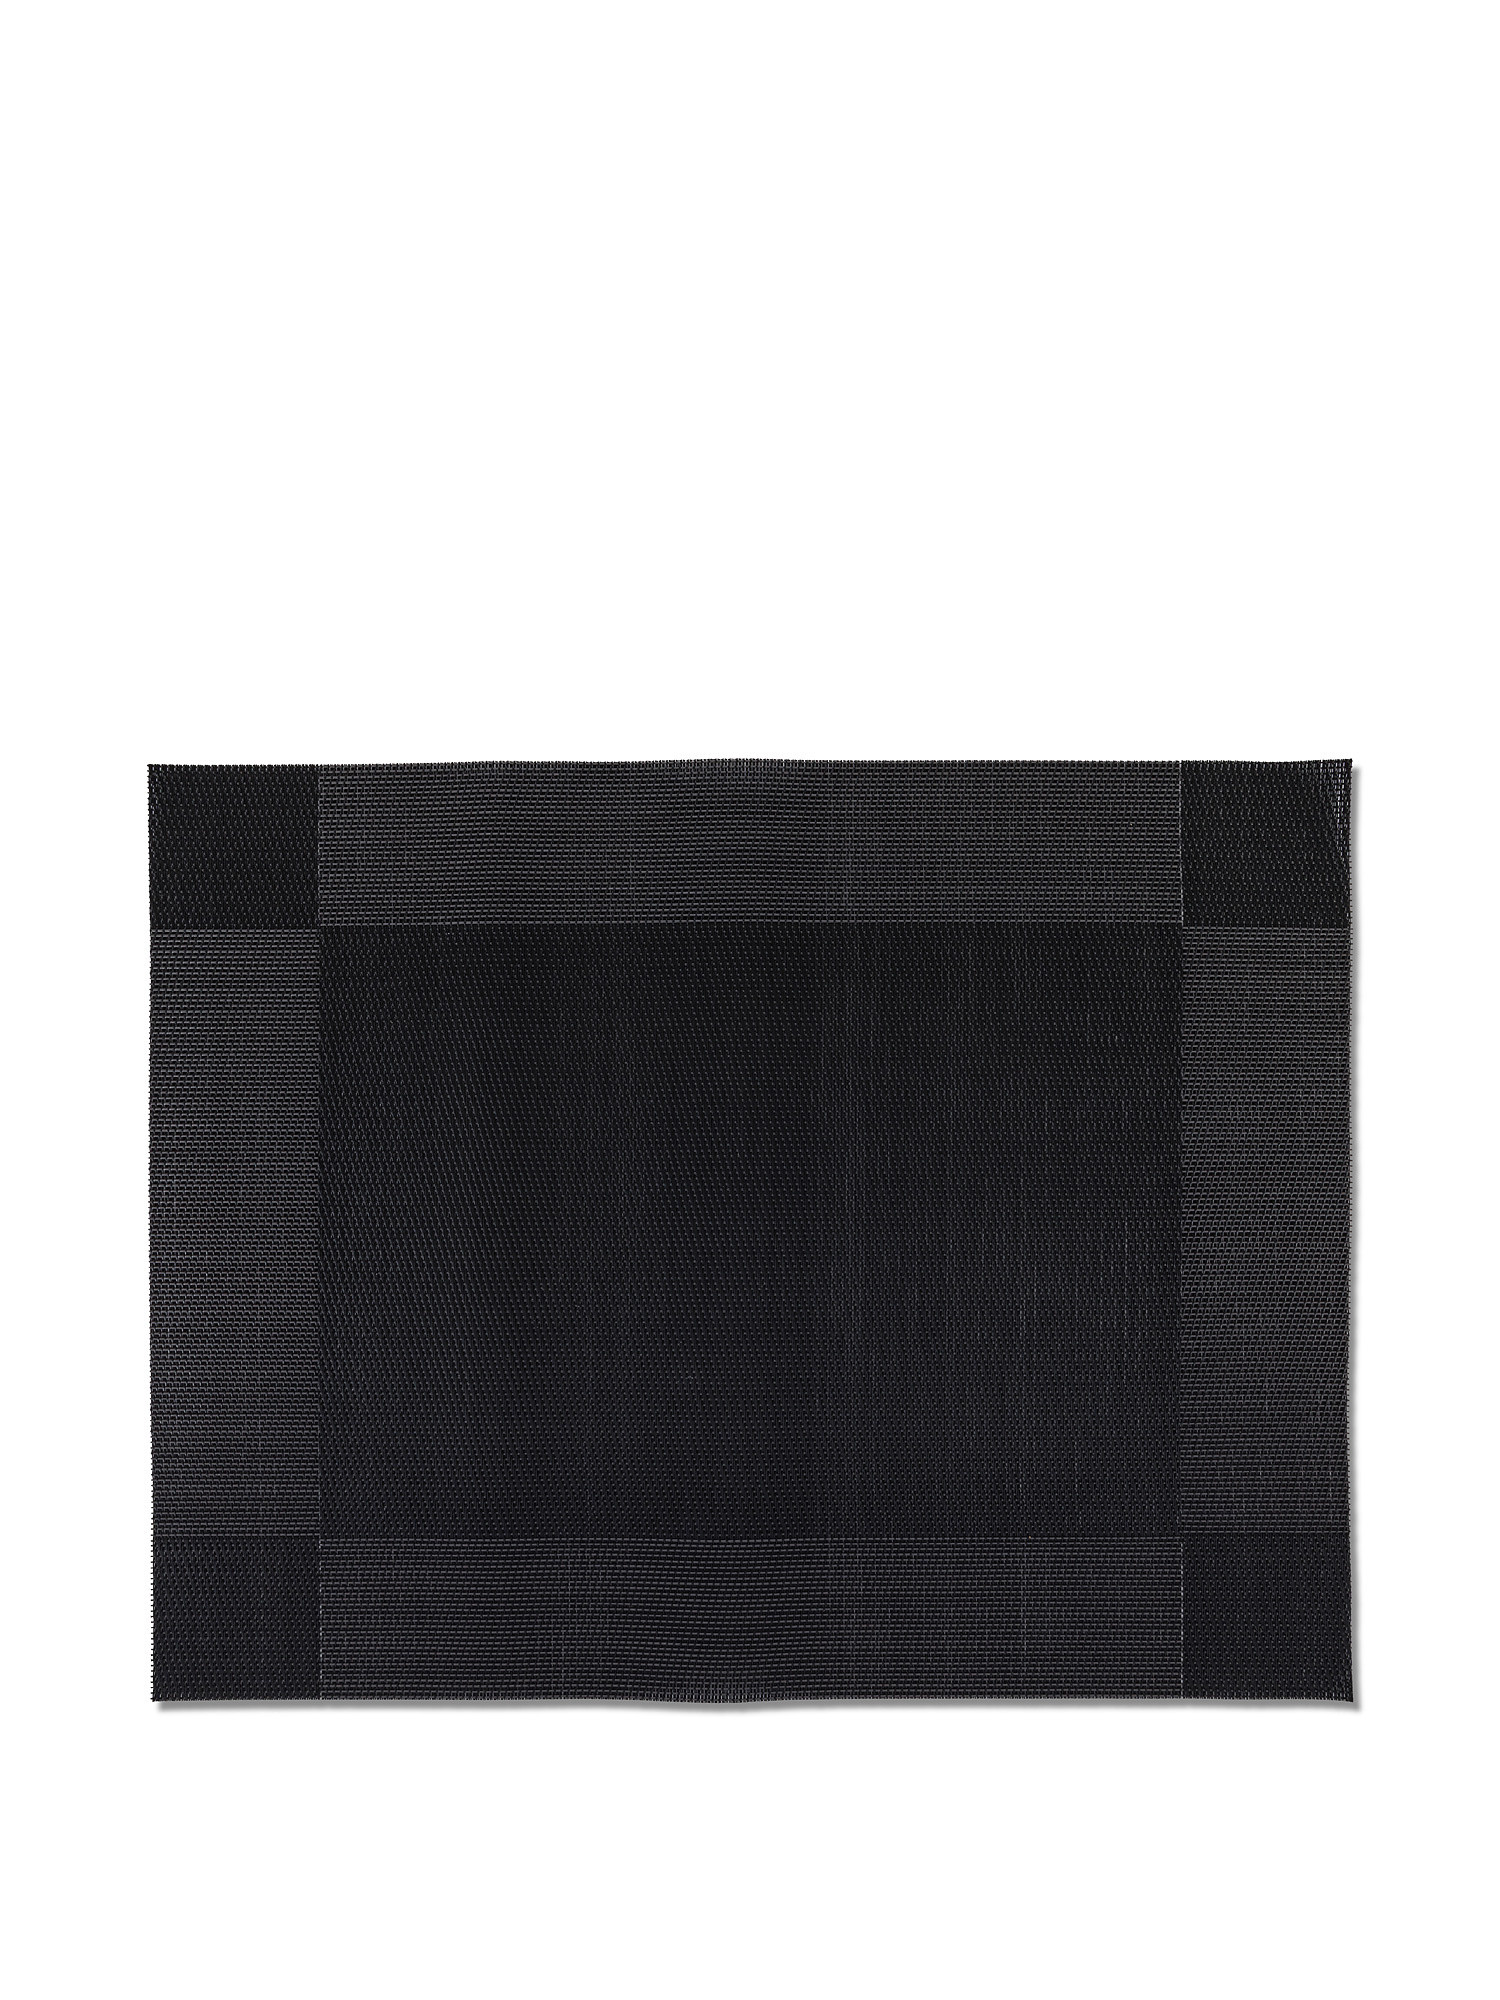 Каркас подставки для столовых приборов из ПВХ Coincasa, черный подставка для столовых приборов черная lb 4